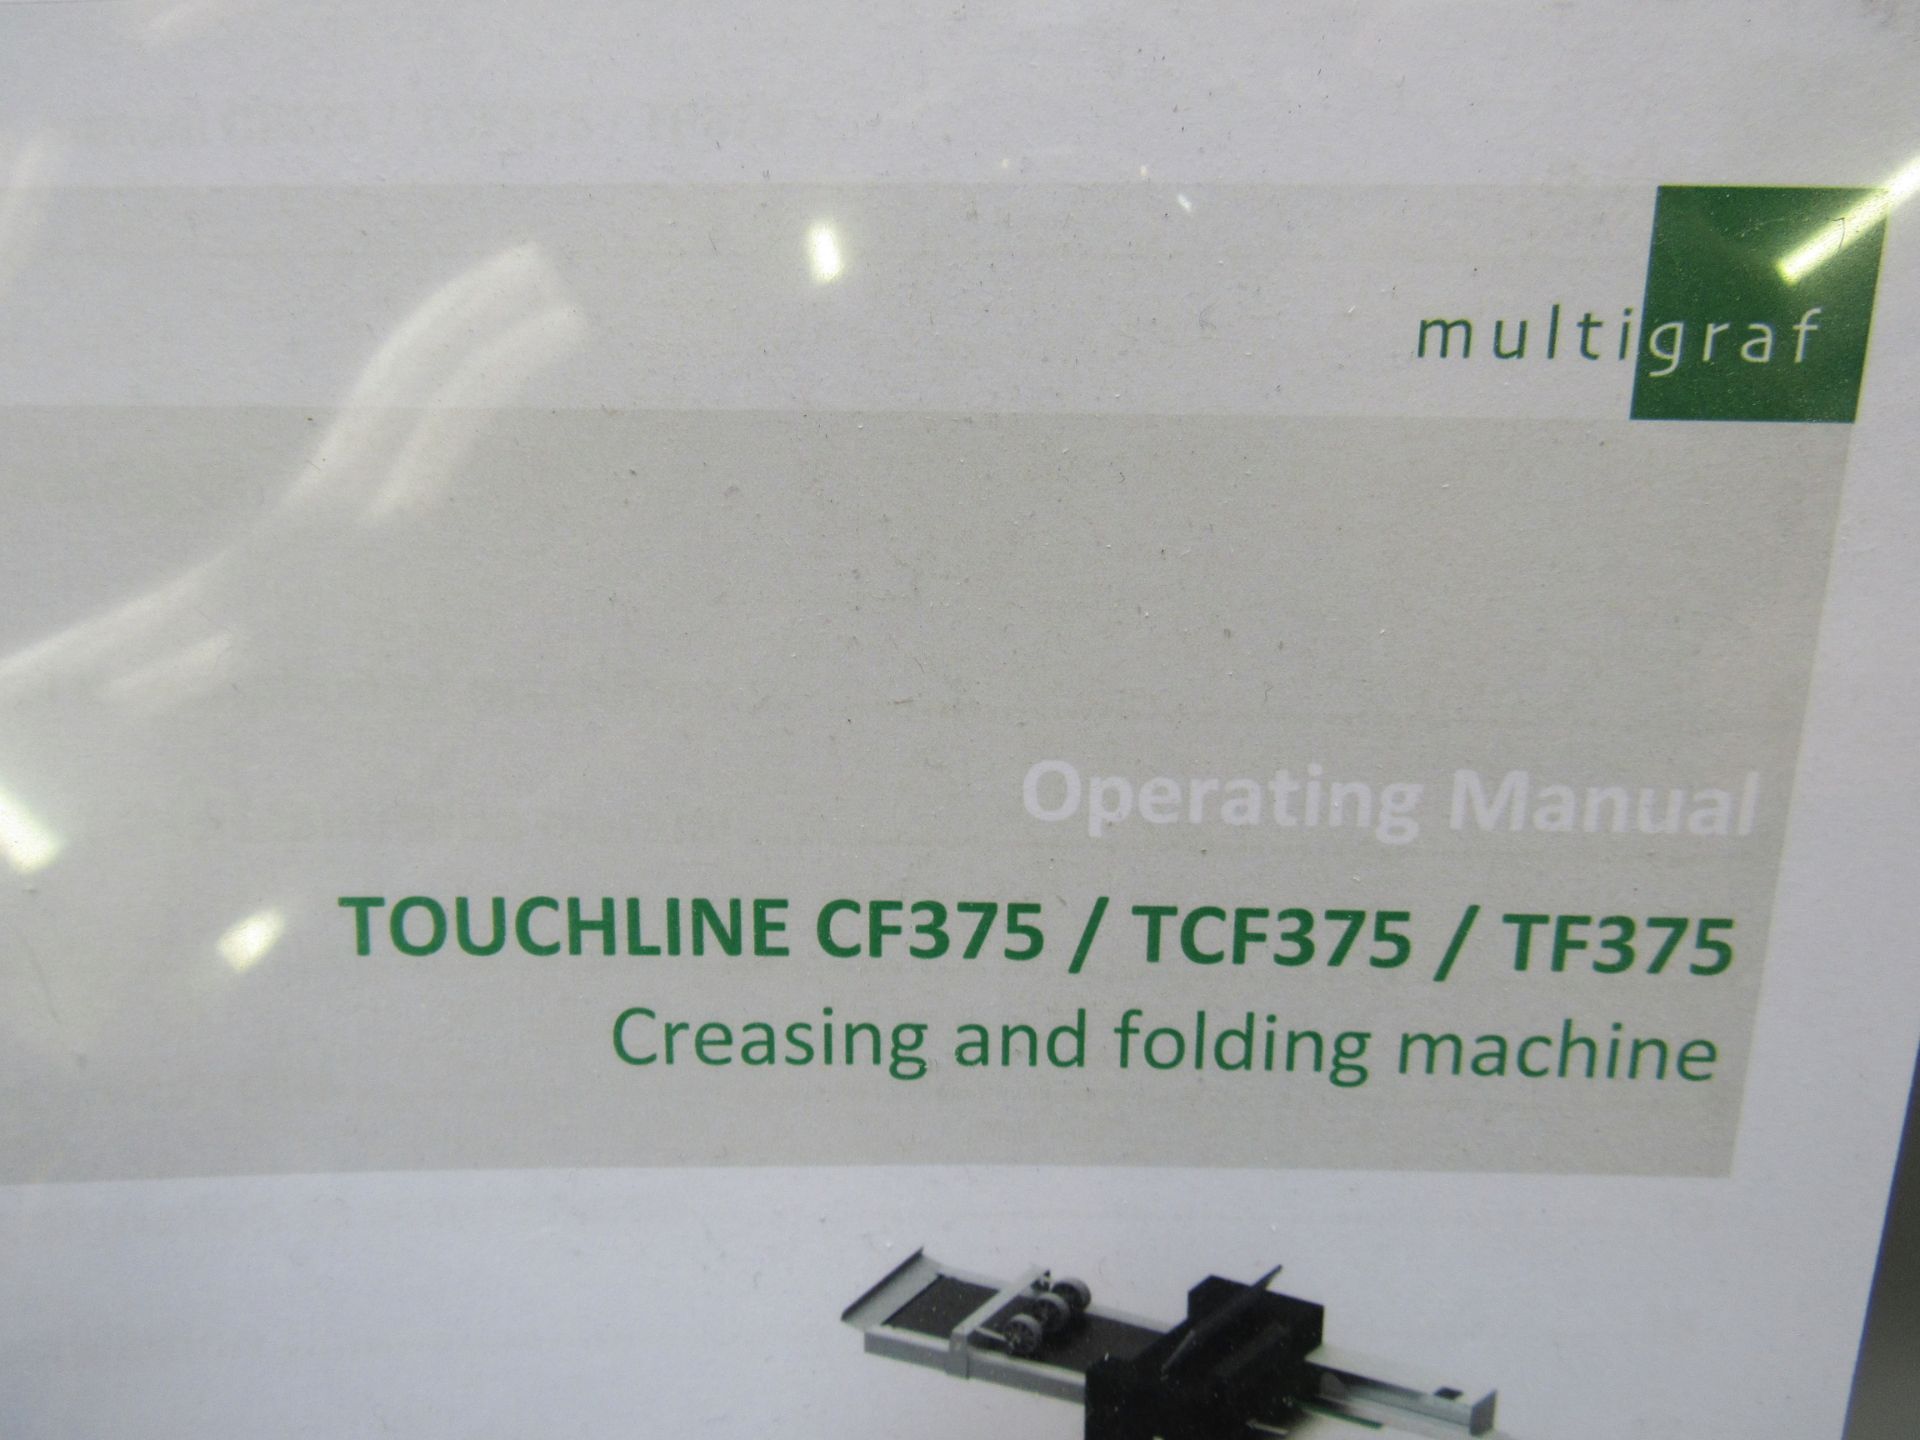 Multigraf Touchline CF375 Folder, Creaser, Product Number 375-502, Serial Number 41239 - Image 3 of 4